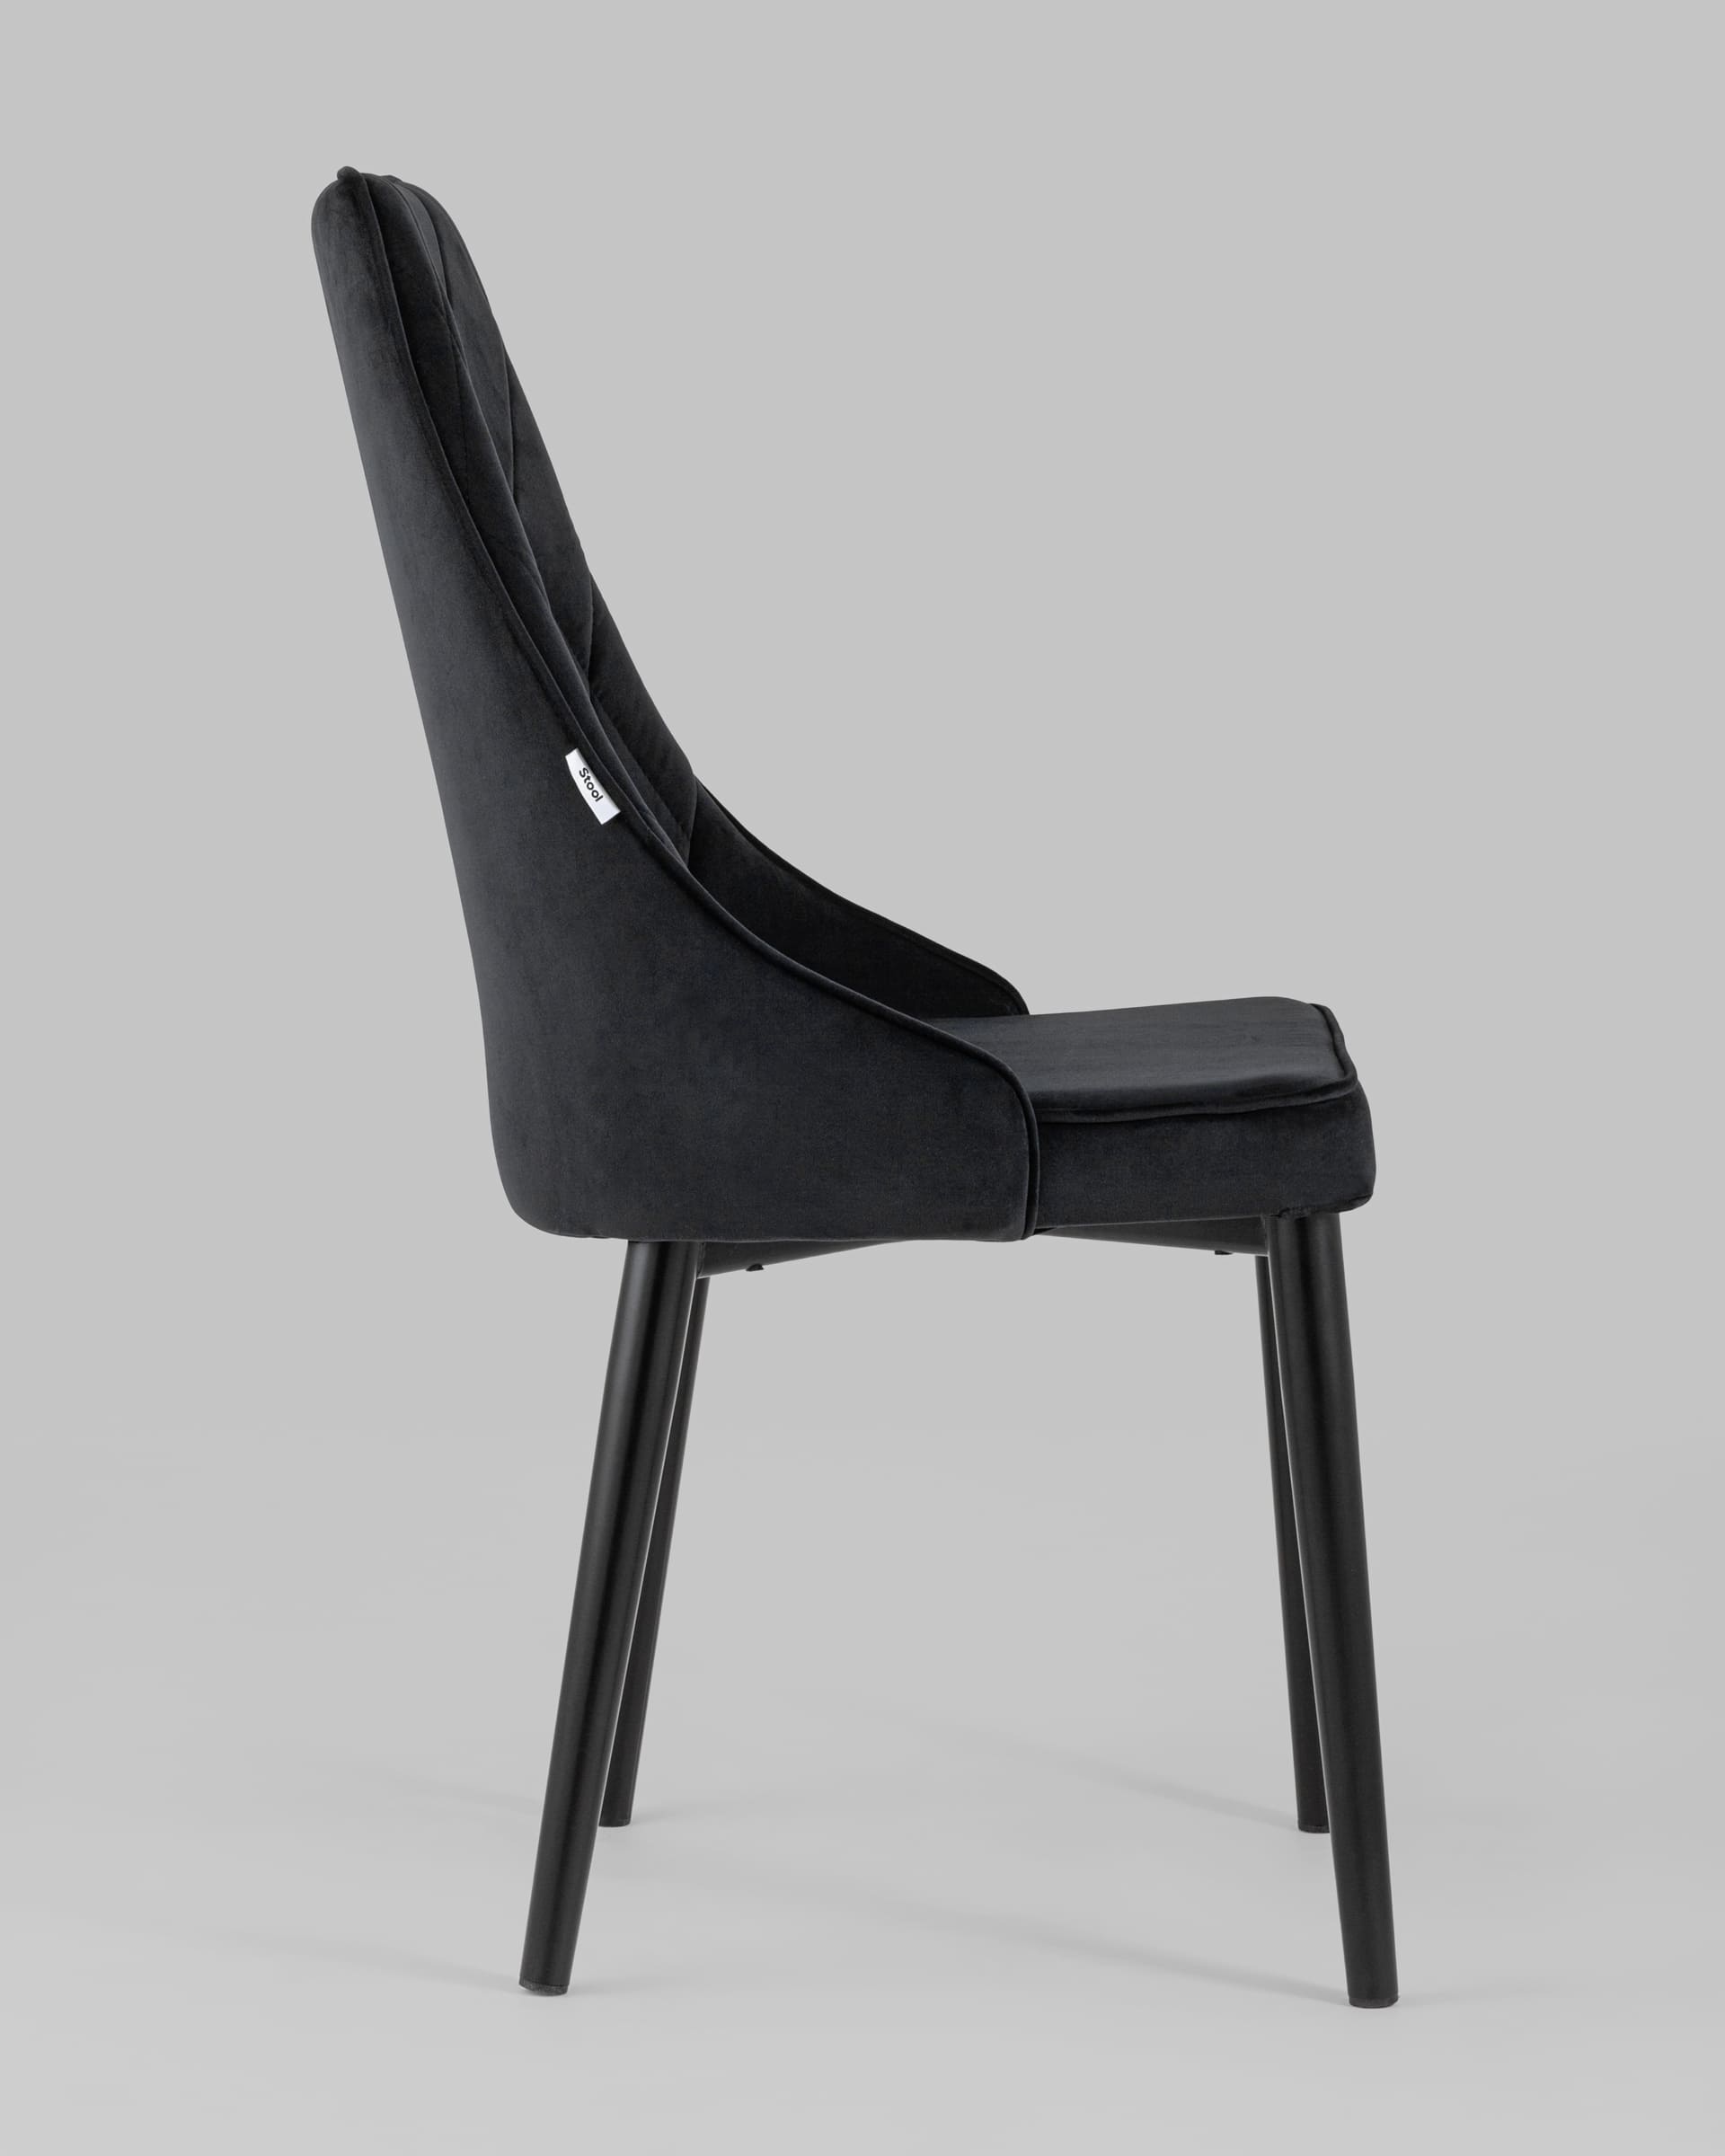 Дегтеобразный черный стул мелена